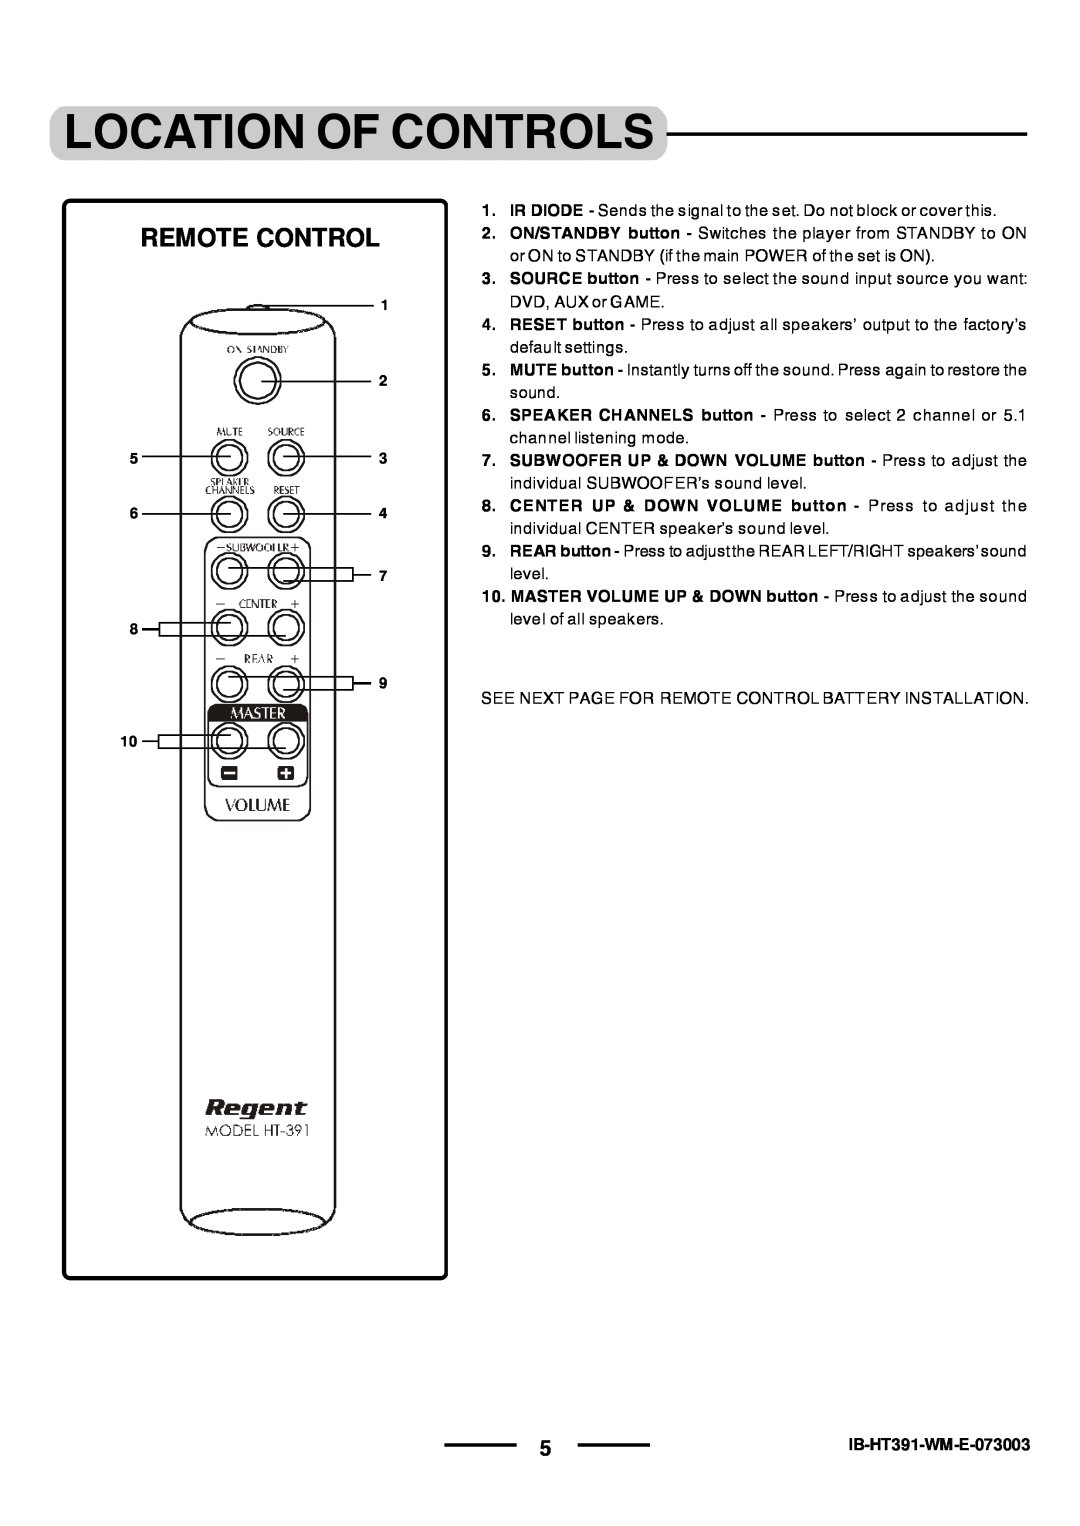 Lenoxx Electronics HT-391 manual Remote Control, Location Of Controls, IB-HT391-WM-E-073003 